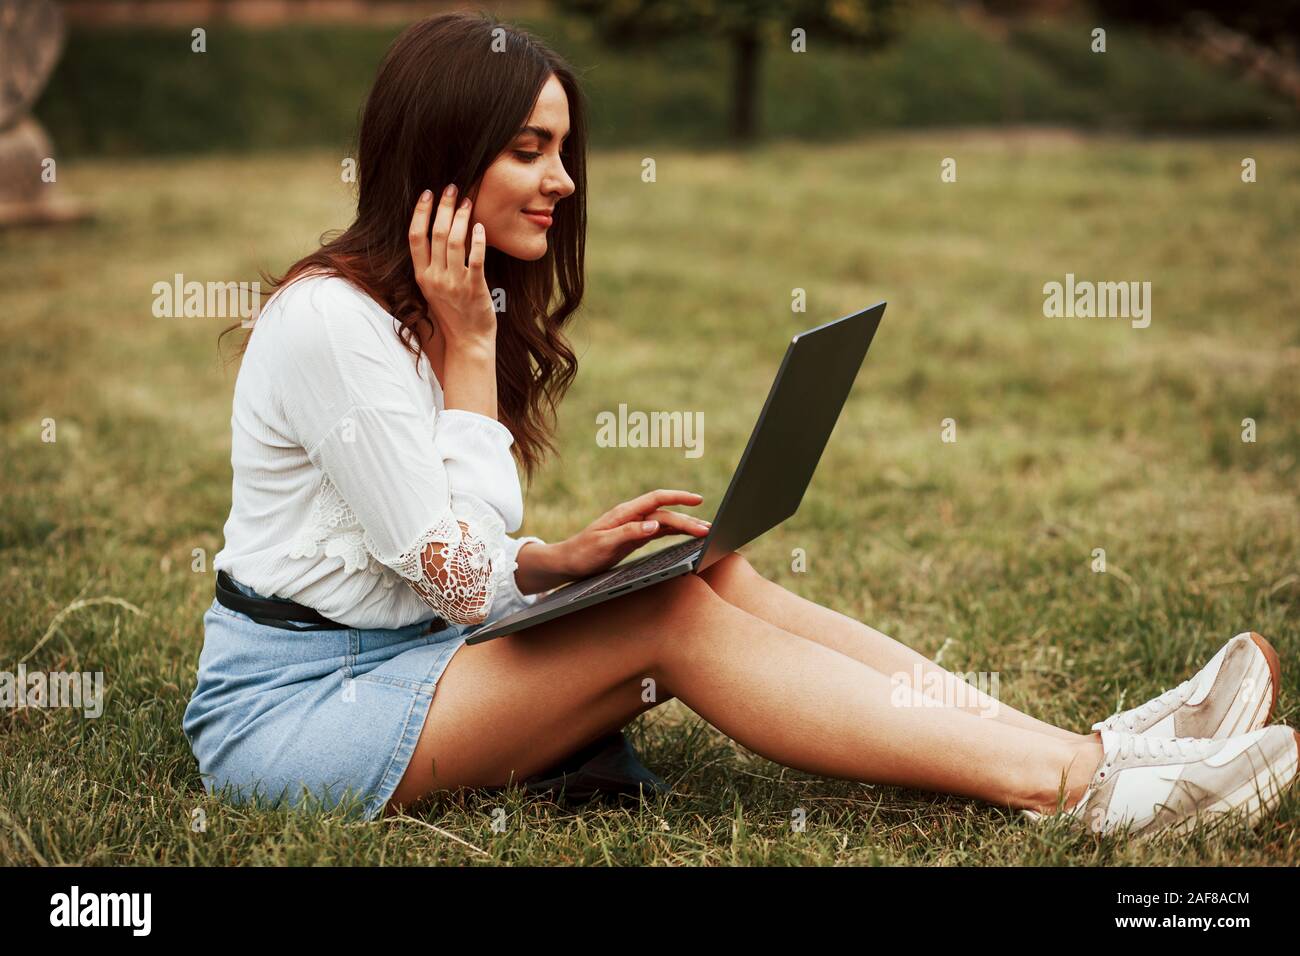 Drahtlose Technologien. Junge Frau Wochenende haben und sitzt im Park am Tag Stockfoto